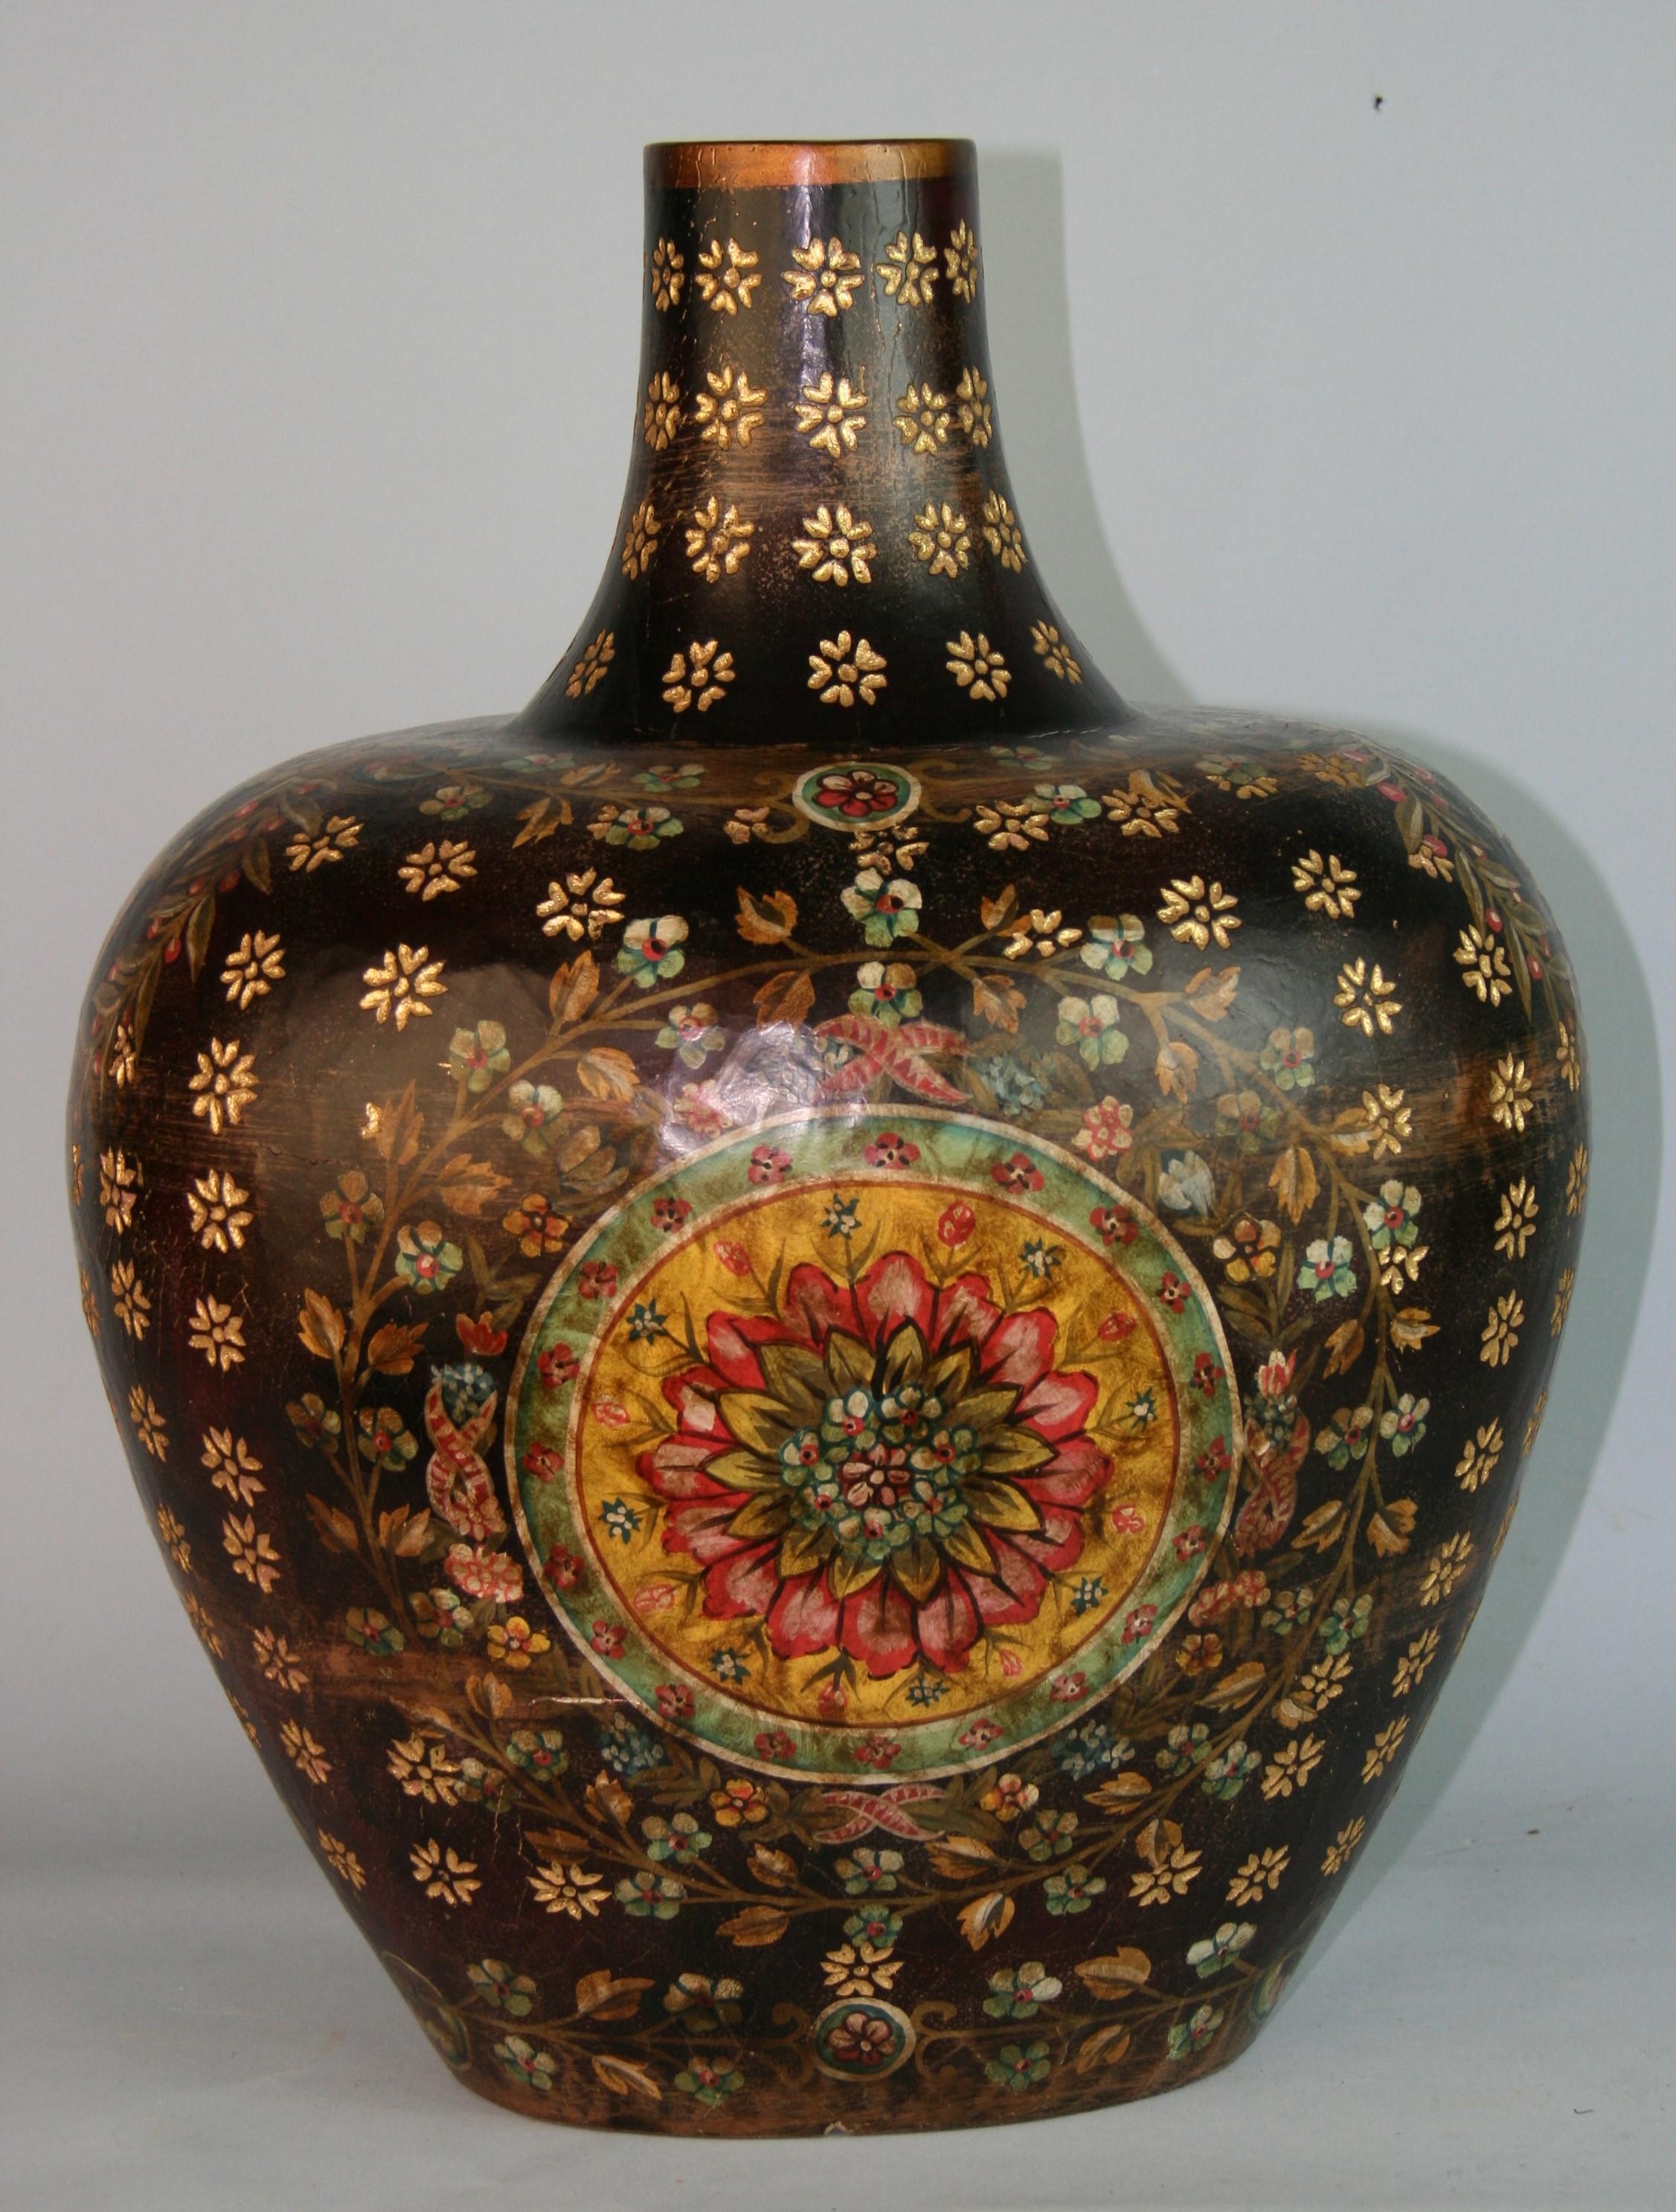 1307 Spanish hand painted ovoid shaped wood vase.